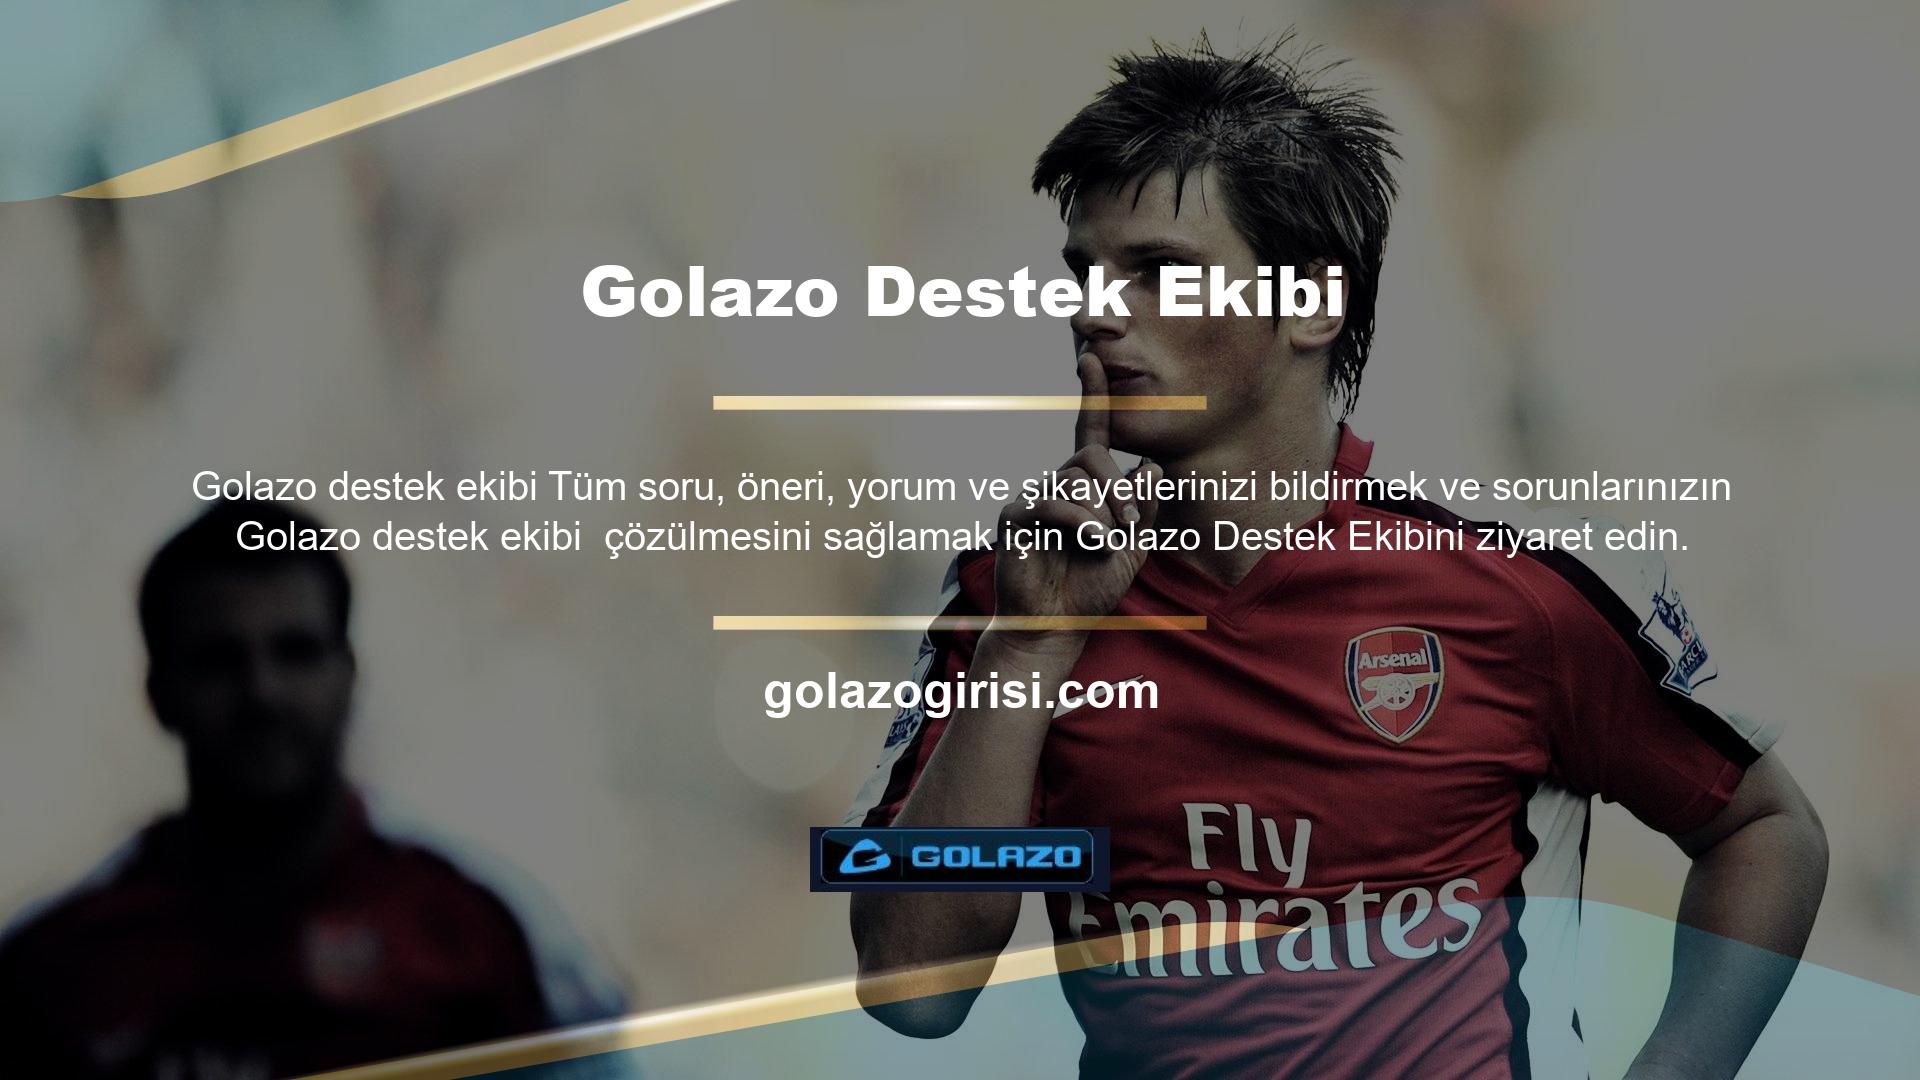 Golazo TV
Golazo maç sitesi, kullanıcılarına aynı anda hem maç izleyip hem de canlı bahis oynayabilecekleri özel maç izleme hizmeti sunmaktadır